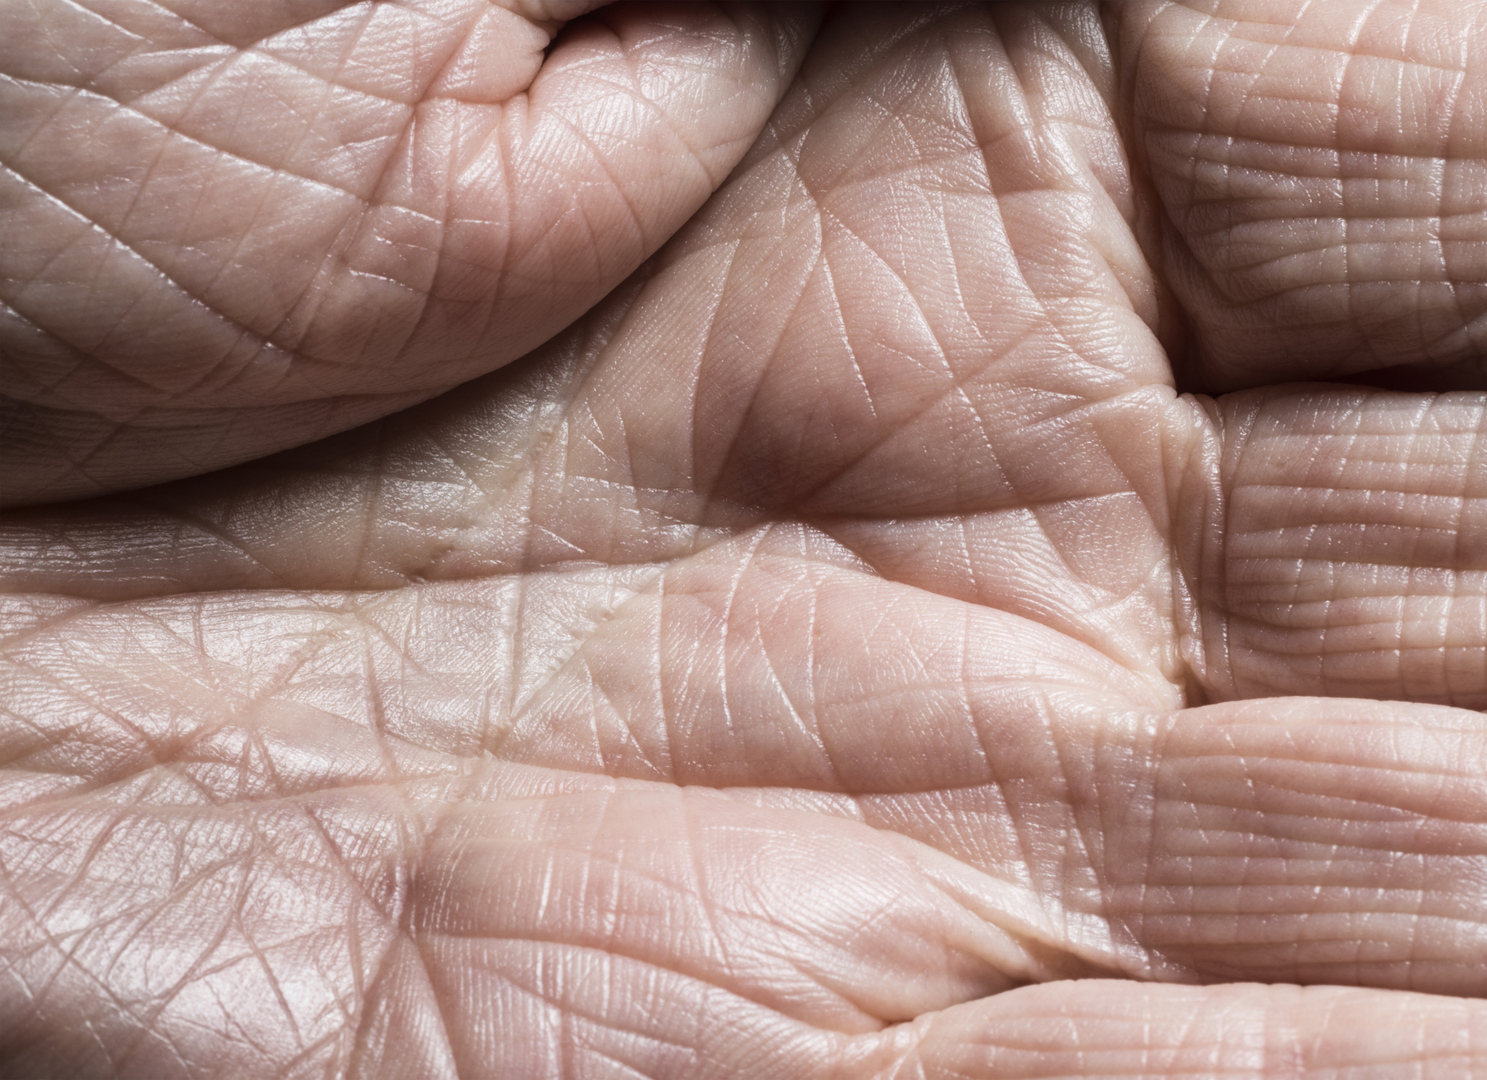 العلماء يطورون جلدا شبيها بالجلد البشري أكثر من أي وقت مضى